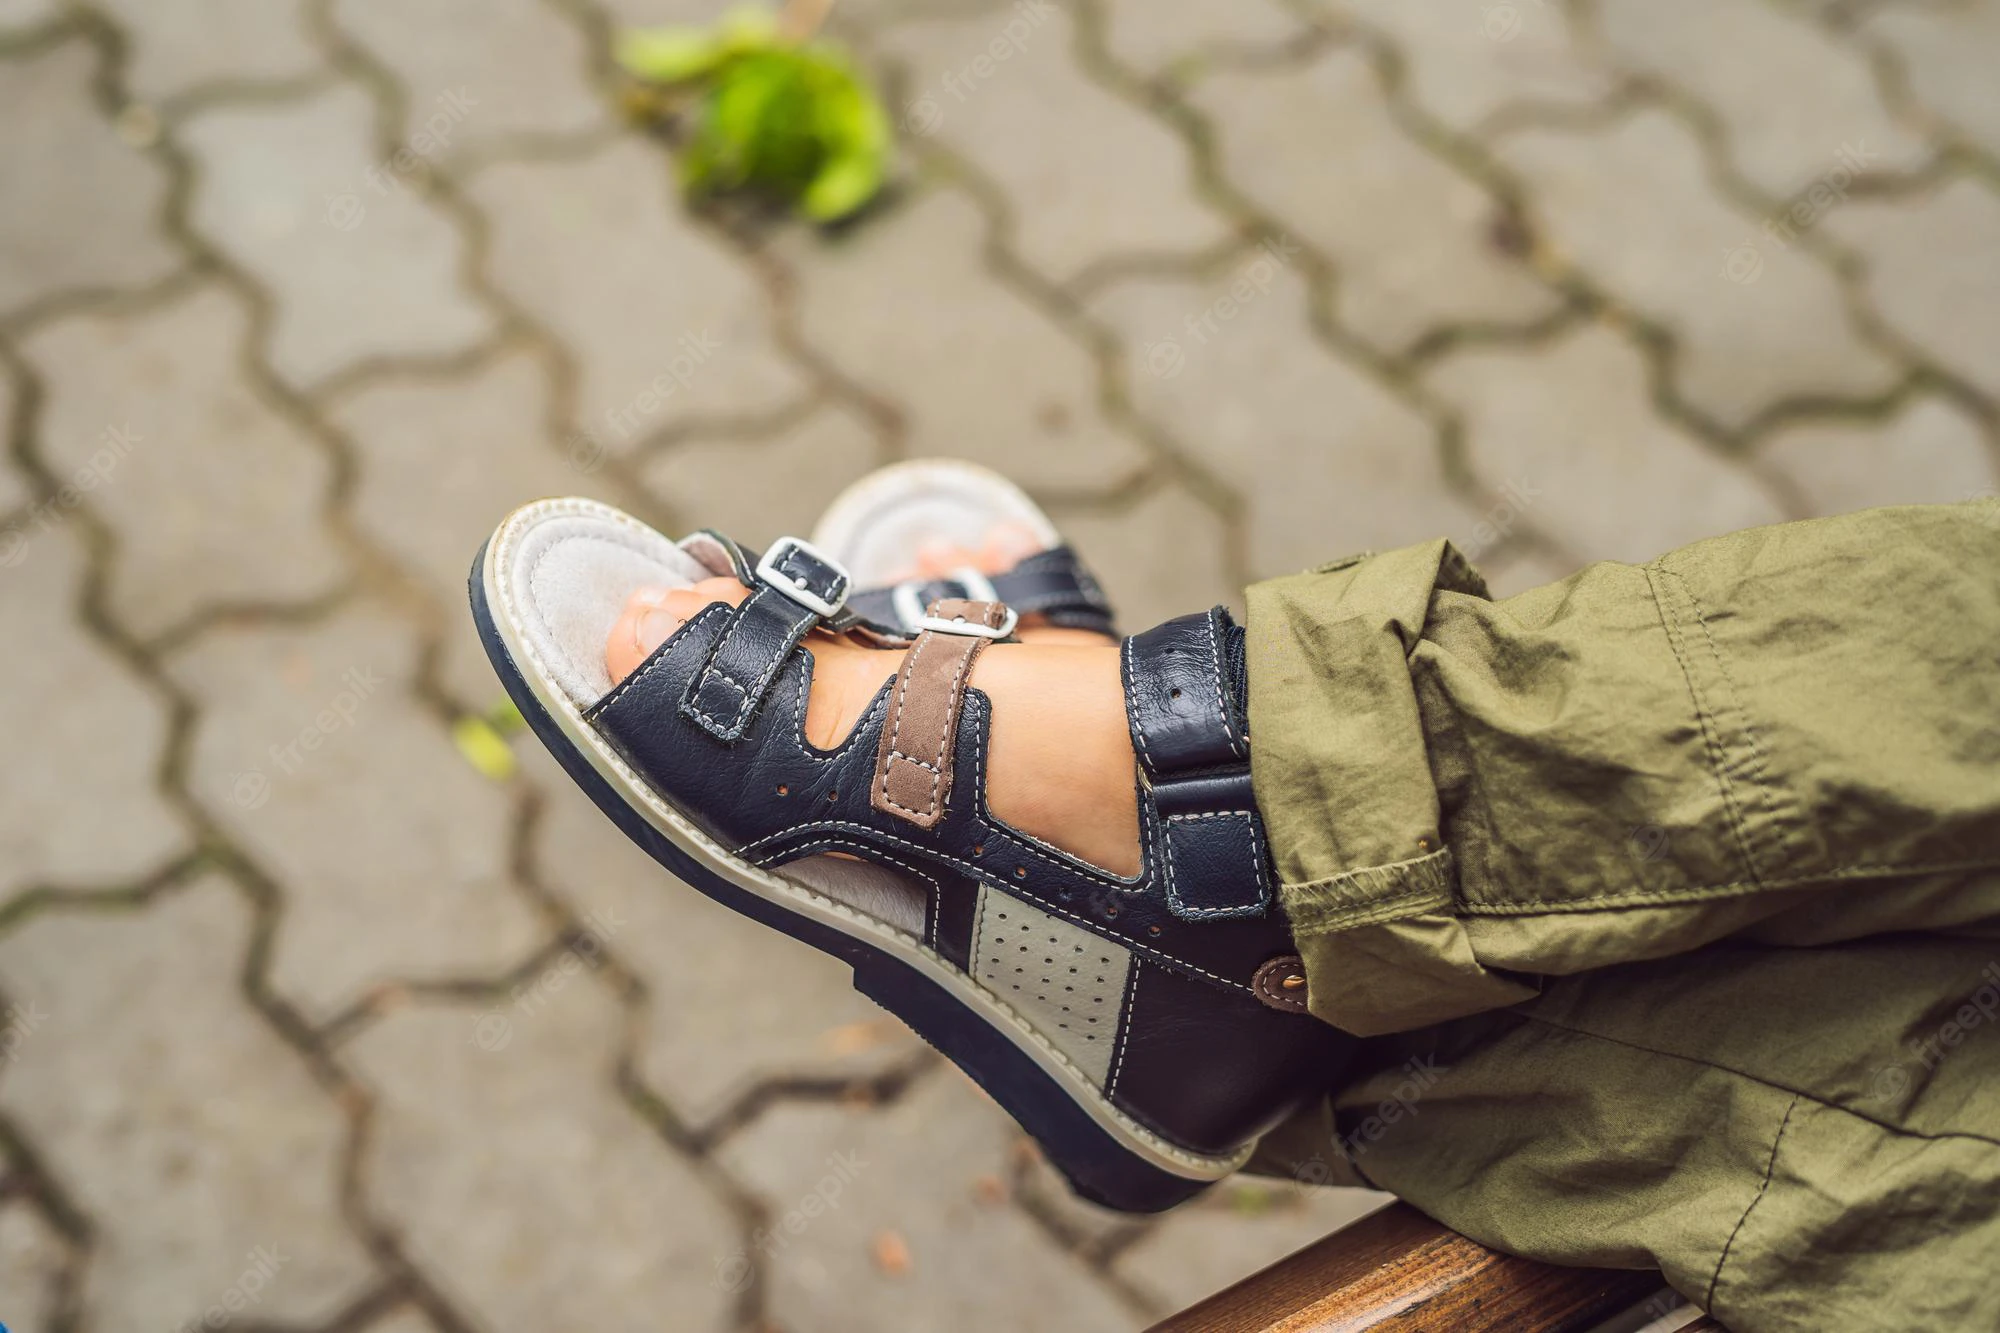 در حالی که بسیاری از مردم فکر می کنند که تنها سالمندان به آن کفش ها نیاز دارند، حقیقت این است که کفش های ارتوپدی می توانند به افراد بدون در نظر گرفتن سنشان کمک کنند؛ حتی اگر کودک هستید یا نوجوان یا مبتلا به دیابت هستید.